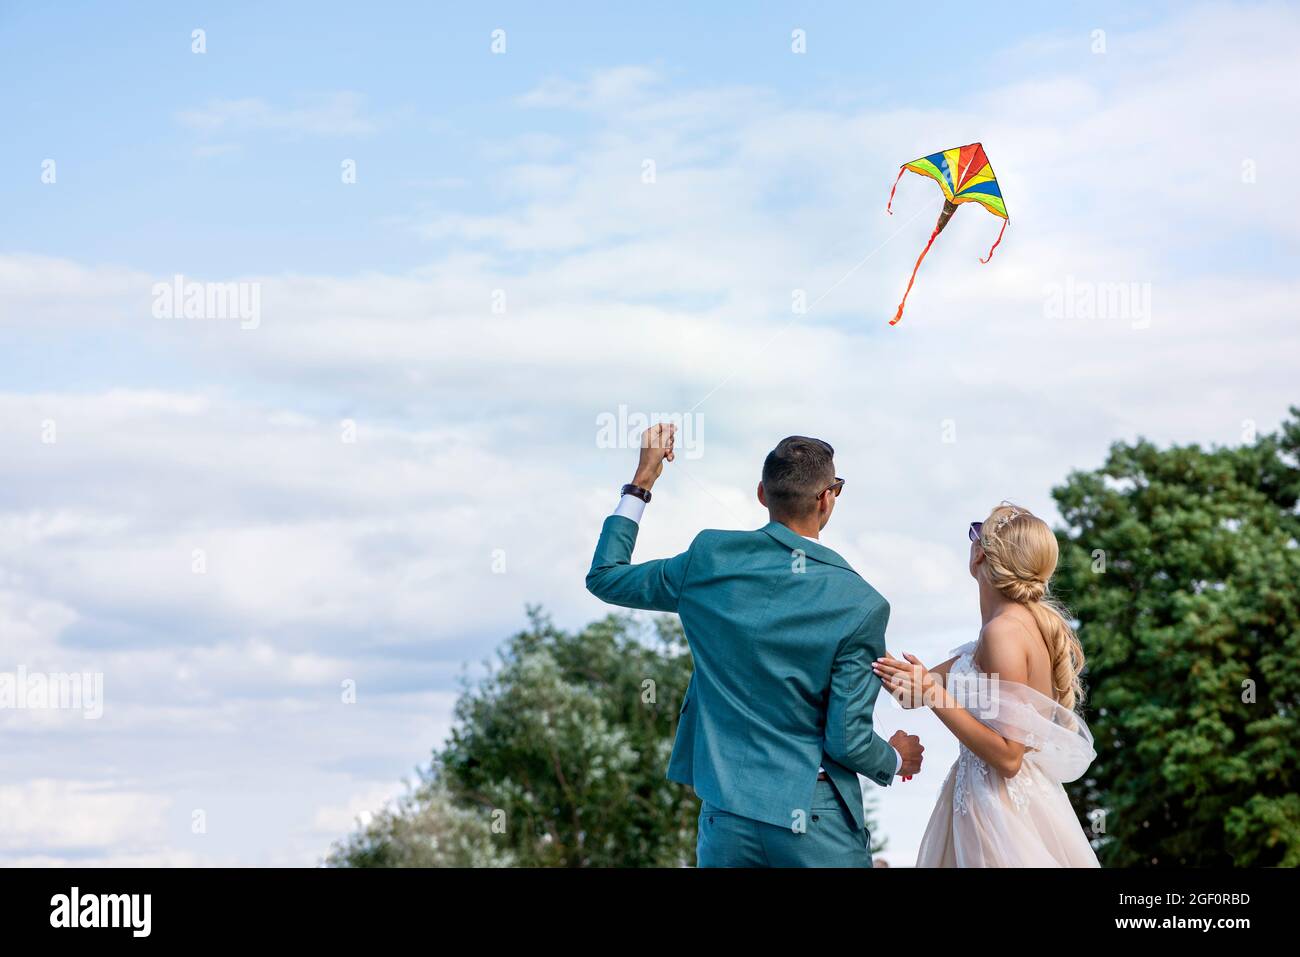 Ein Drachen bei einer Hochzeit. Ein Hochzeitspaar bringt einen Drachen in den Himmel. Braut und Bräutigam fliegen an ihrem Hochzeitstag einen Drachen zusammen. Stockfoto